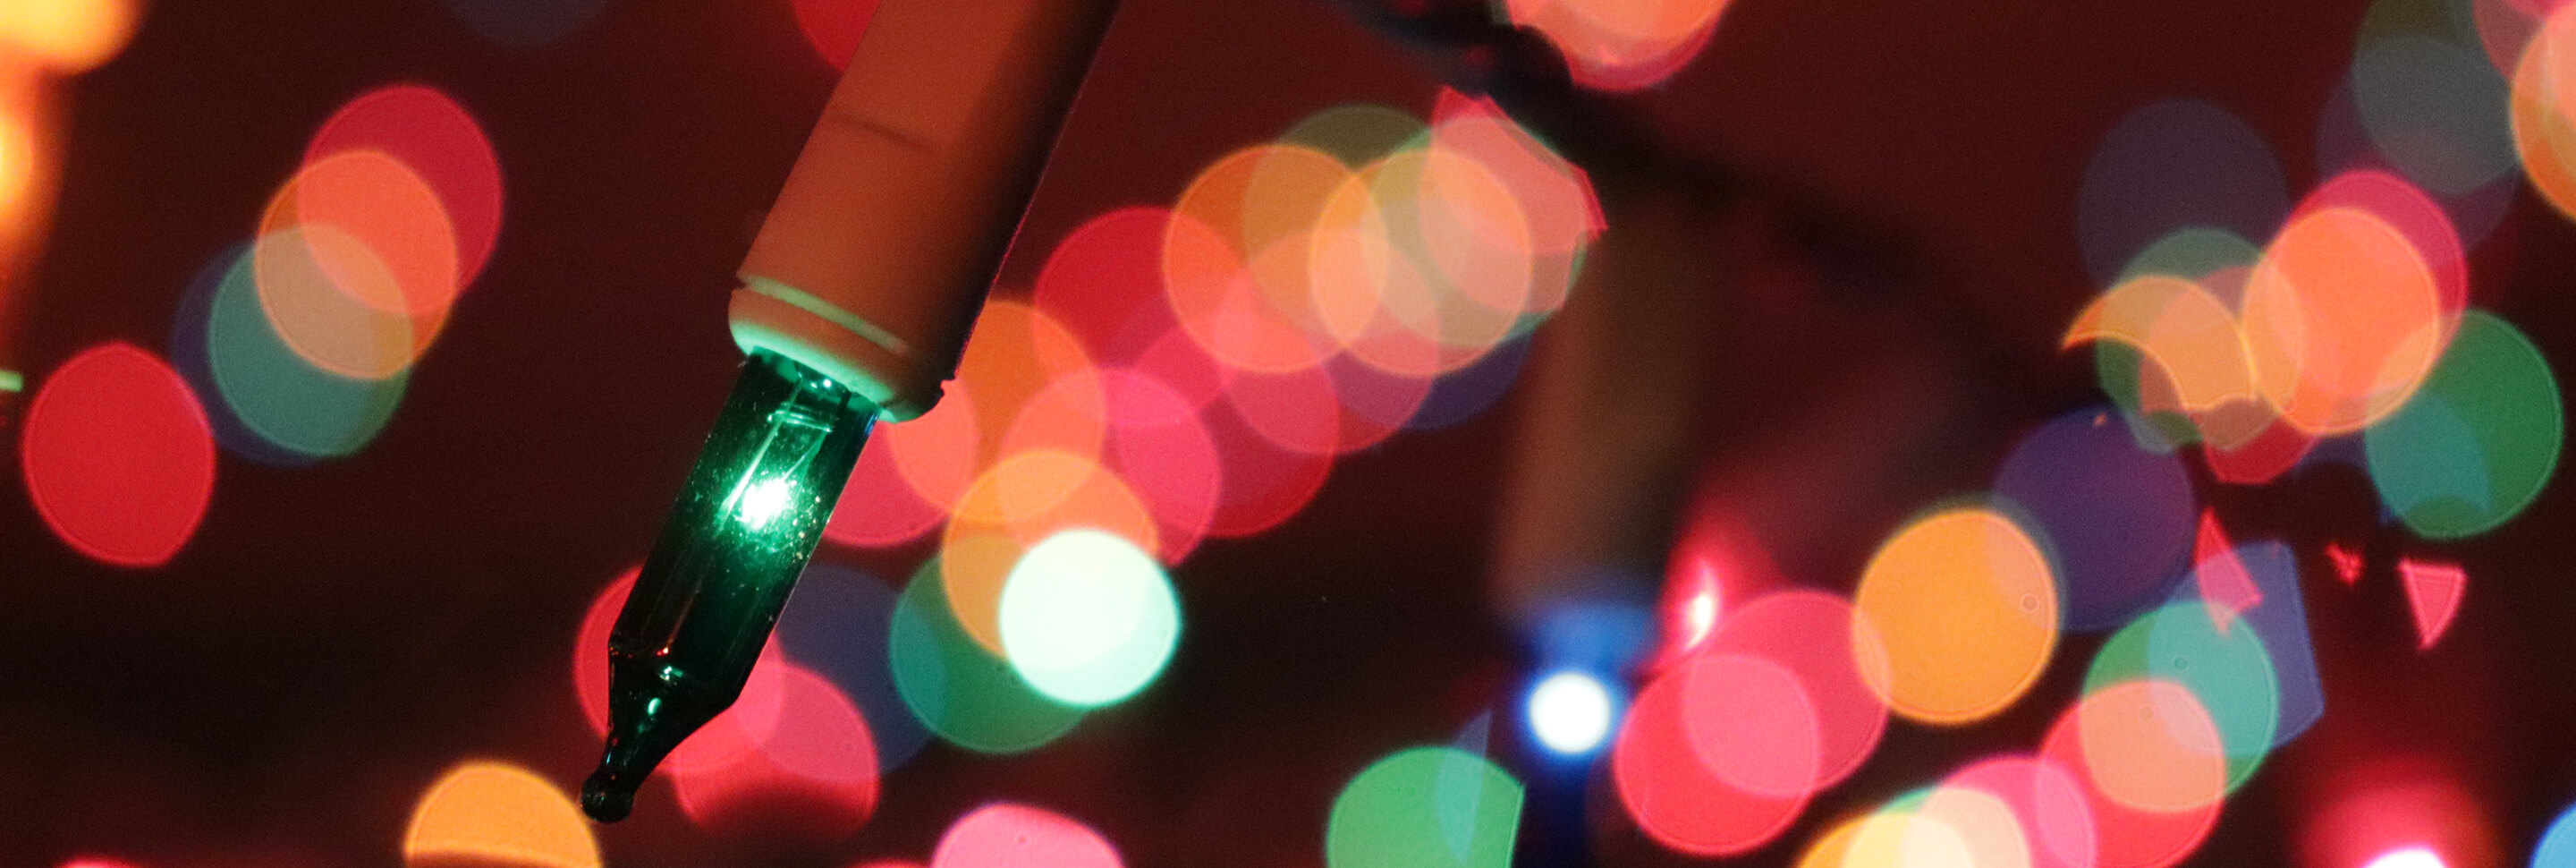 Holiday Gifting the Digital Way | Edgar Allan